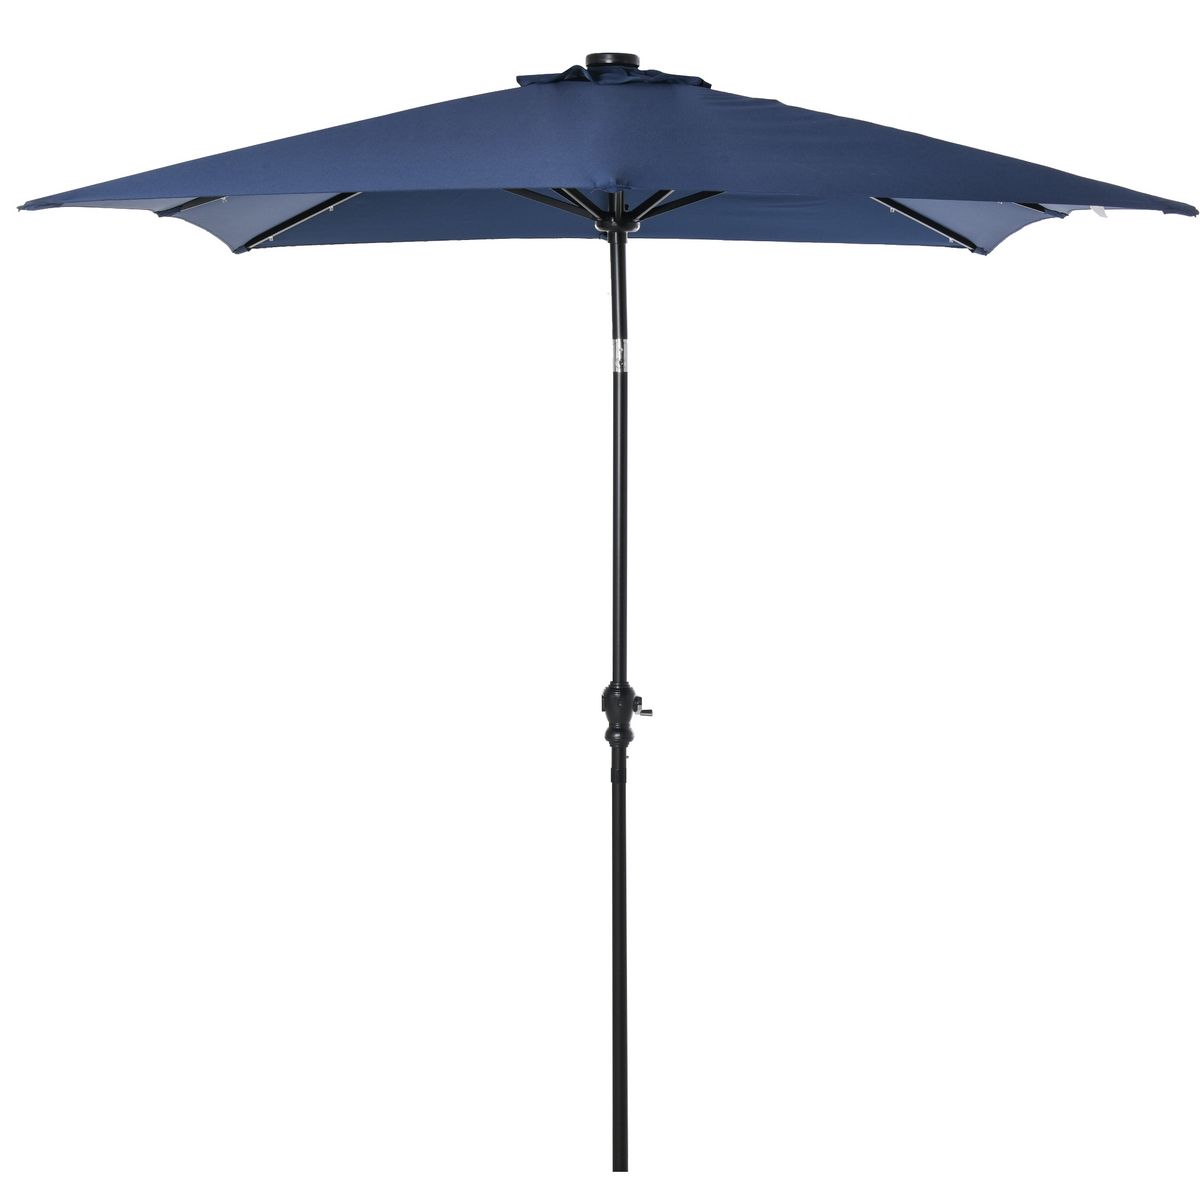 OUTSUNNY Parasol lumineux rectangulaire inclinable dim. 2,68L x 2,05l x 2,48H m parasol LED solaire métal polyester haute densité bleu